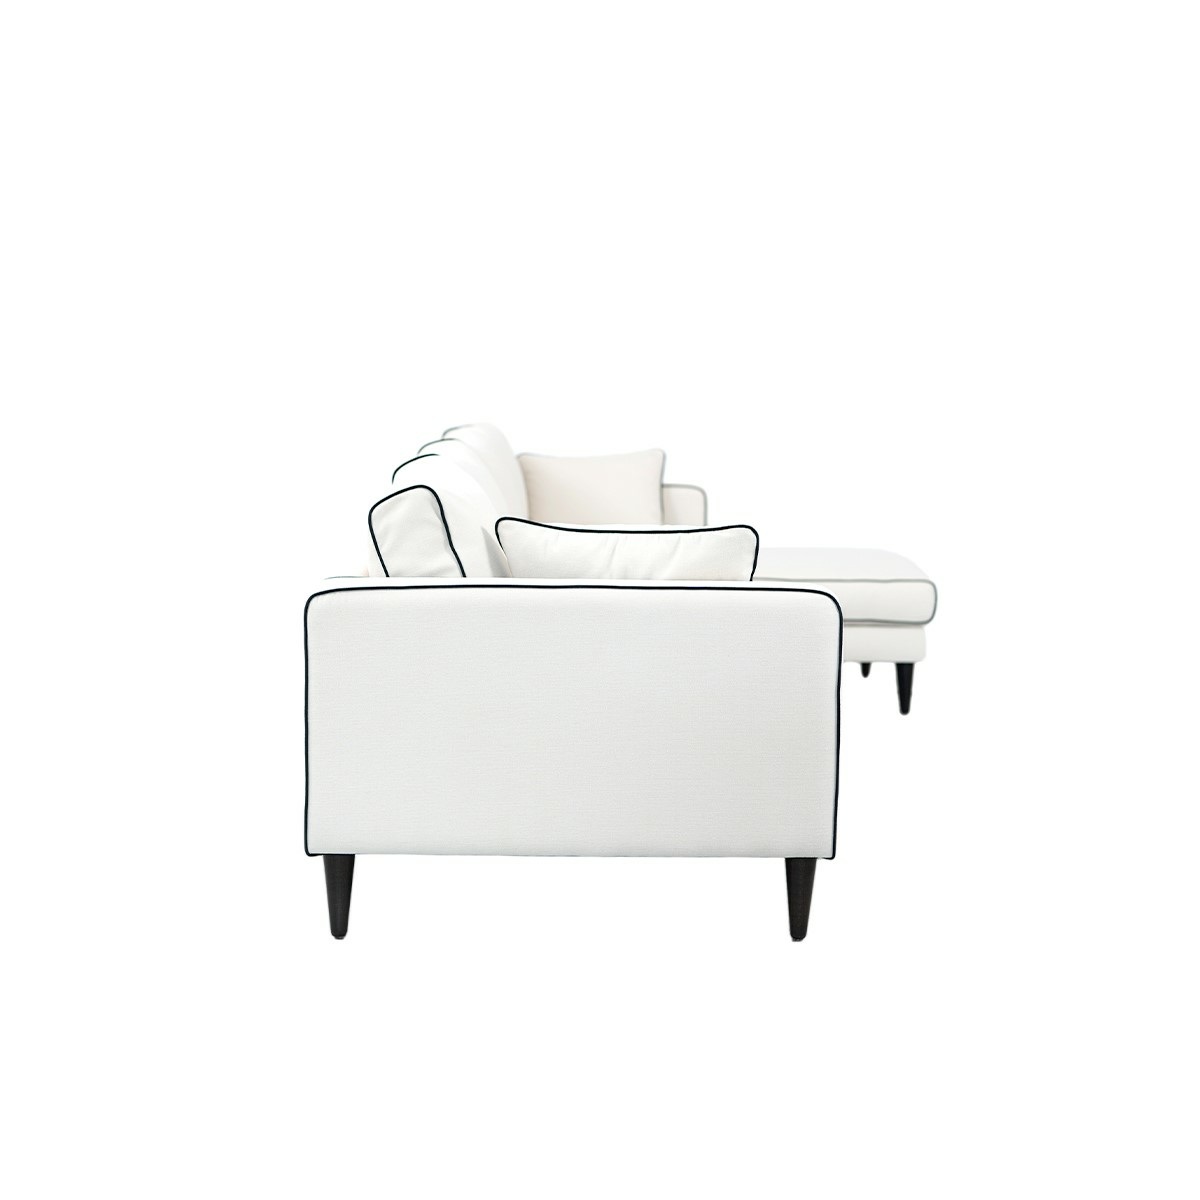 Noa corner sofa - Right angle, L230 x P150 x H75 cm - Cotton - image 4